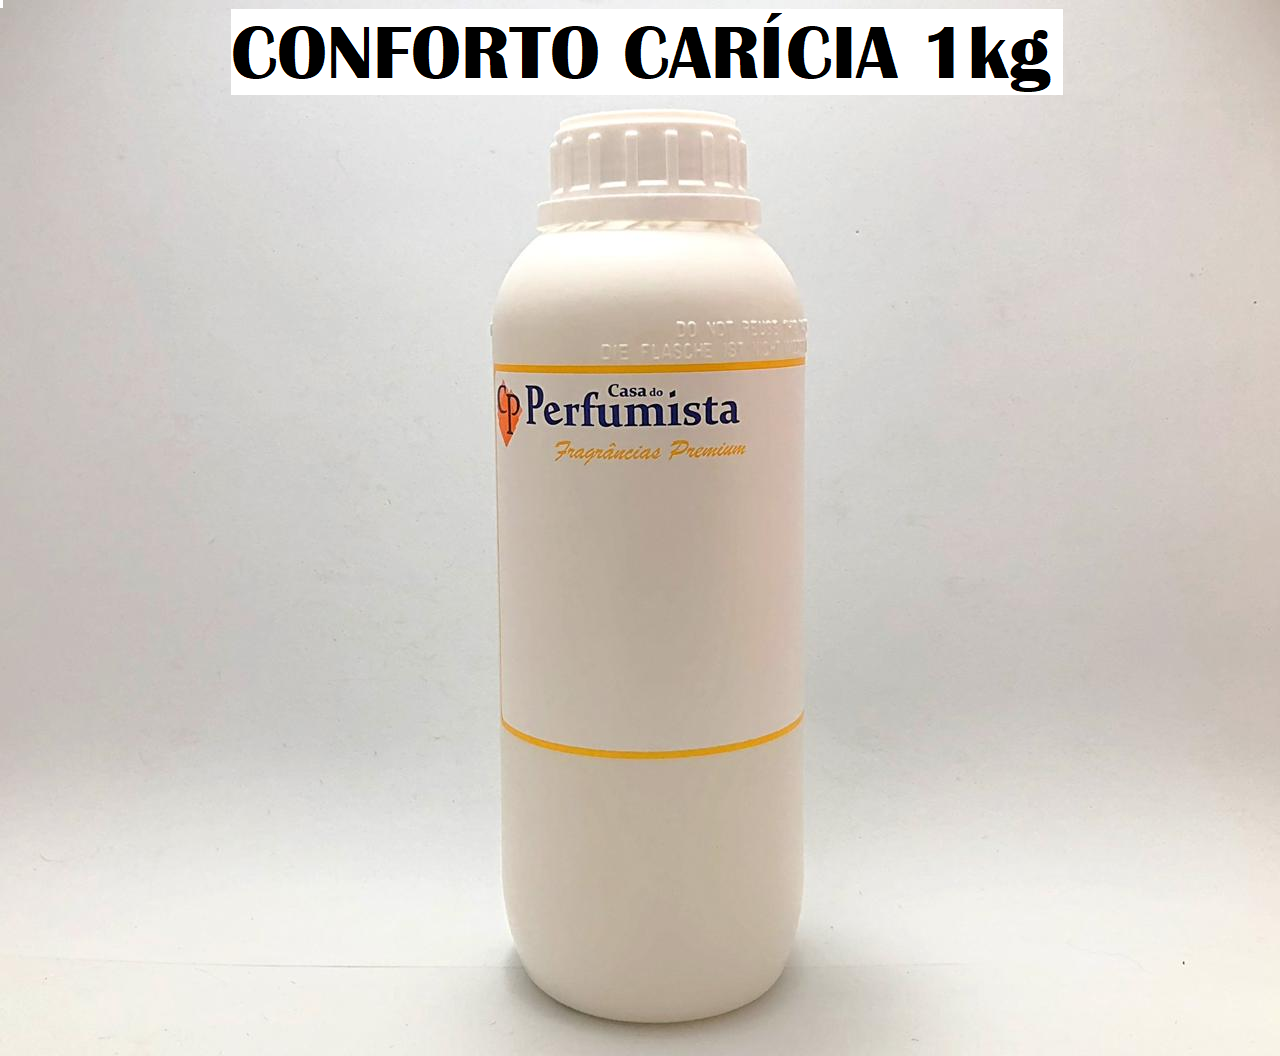 CONFORTO CARÍCIA - 1kg